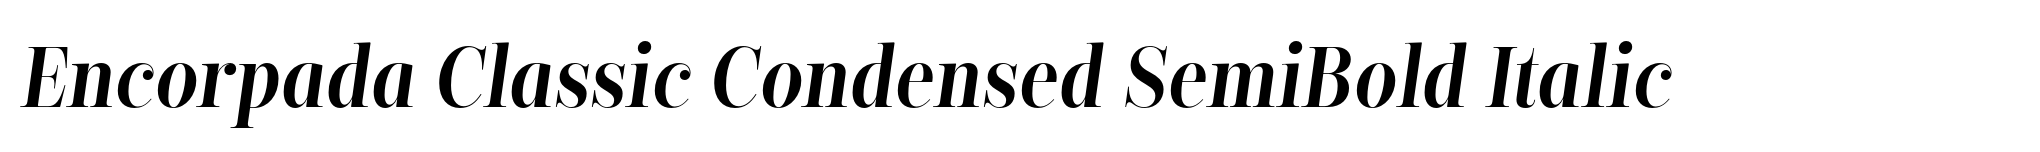 Encorpada Classic Condensed SemiBold Italic image